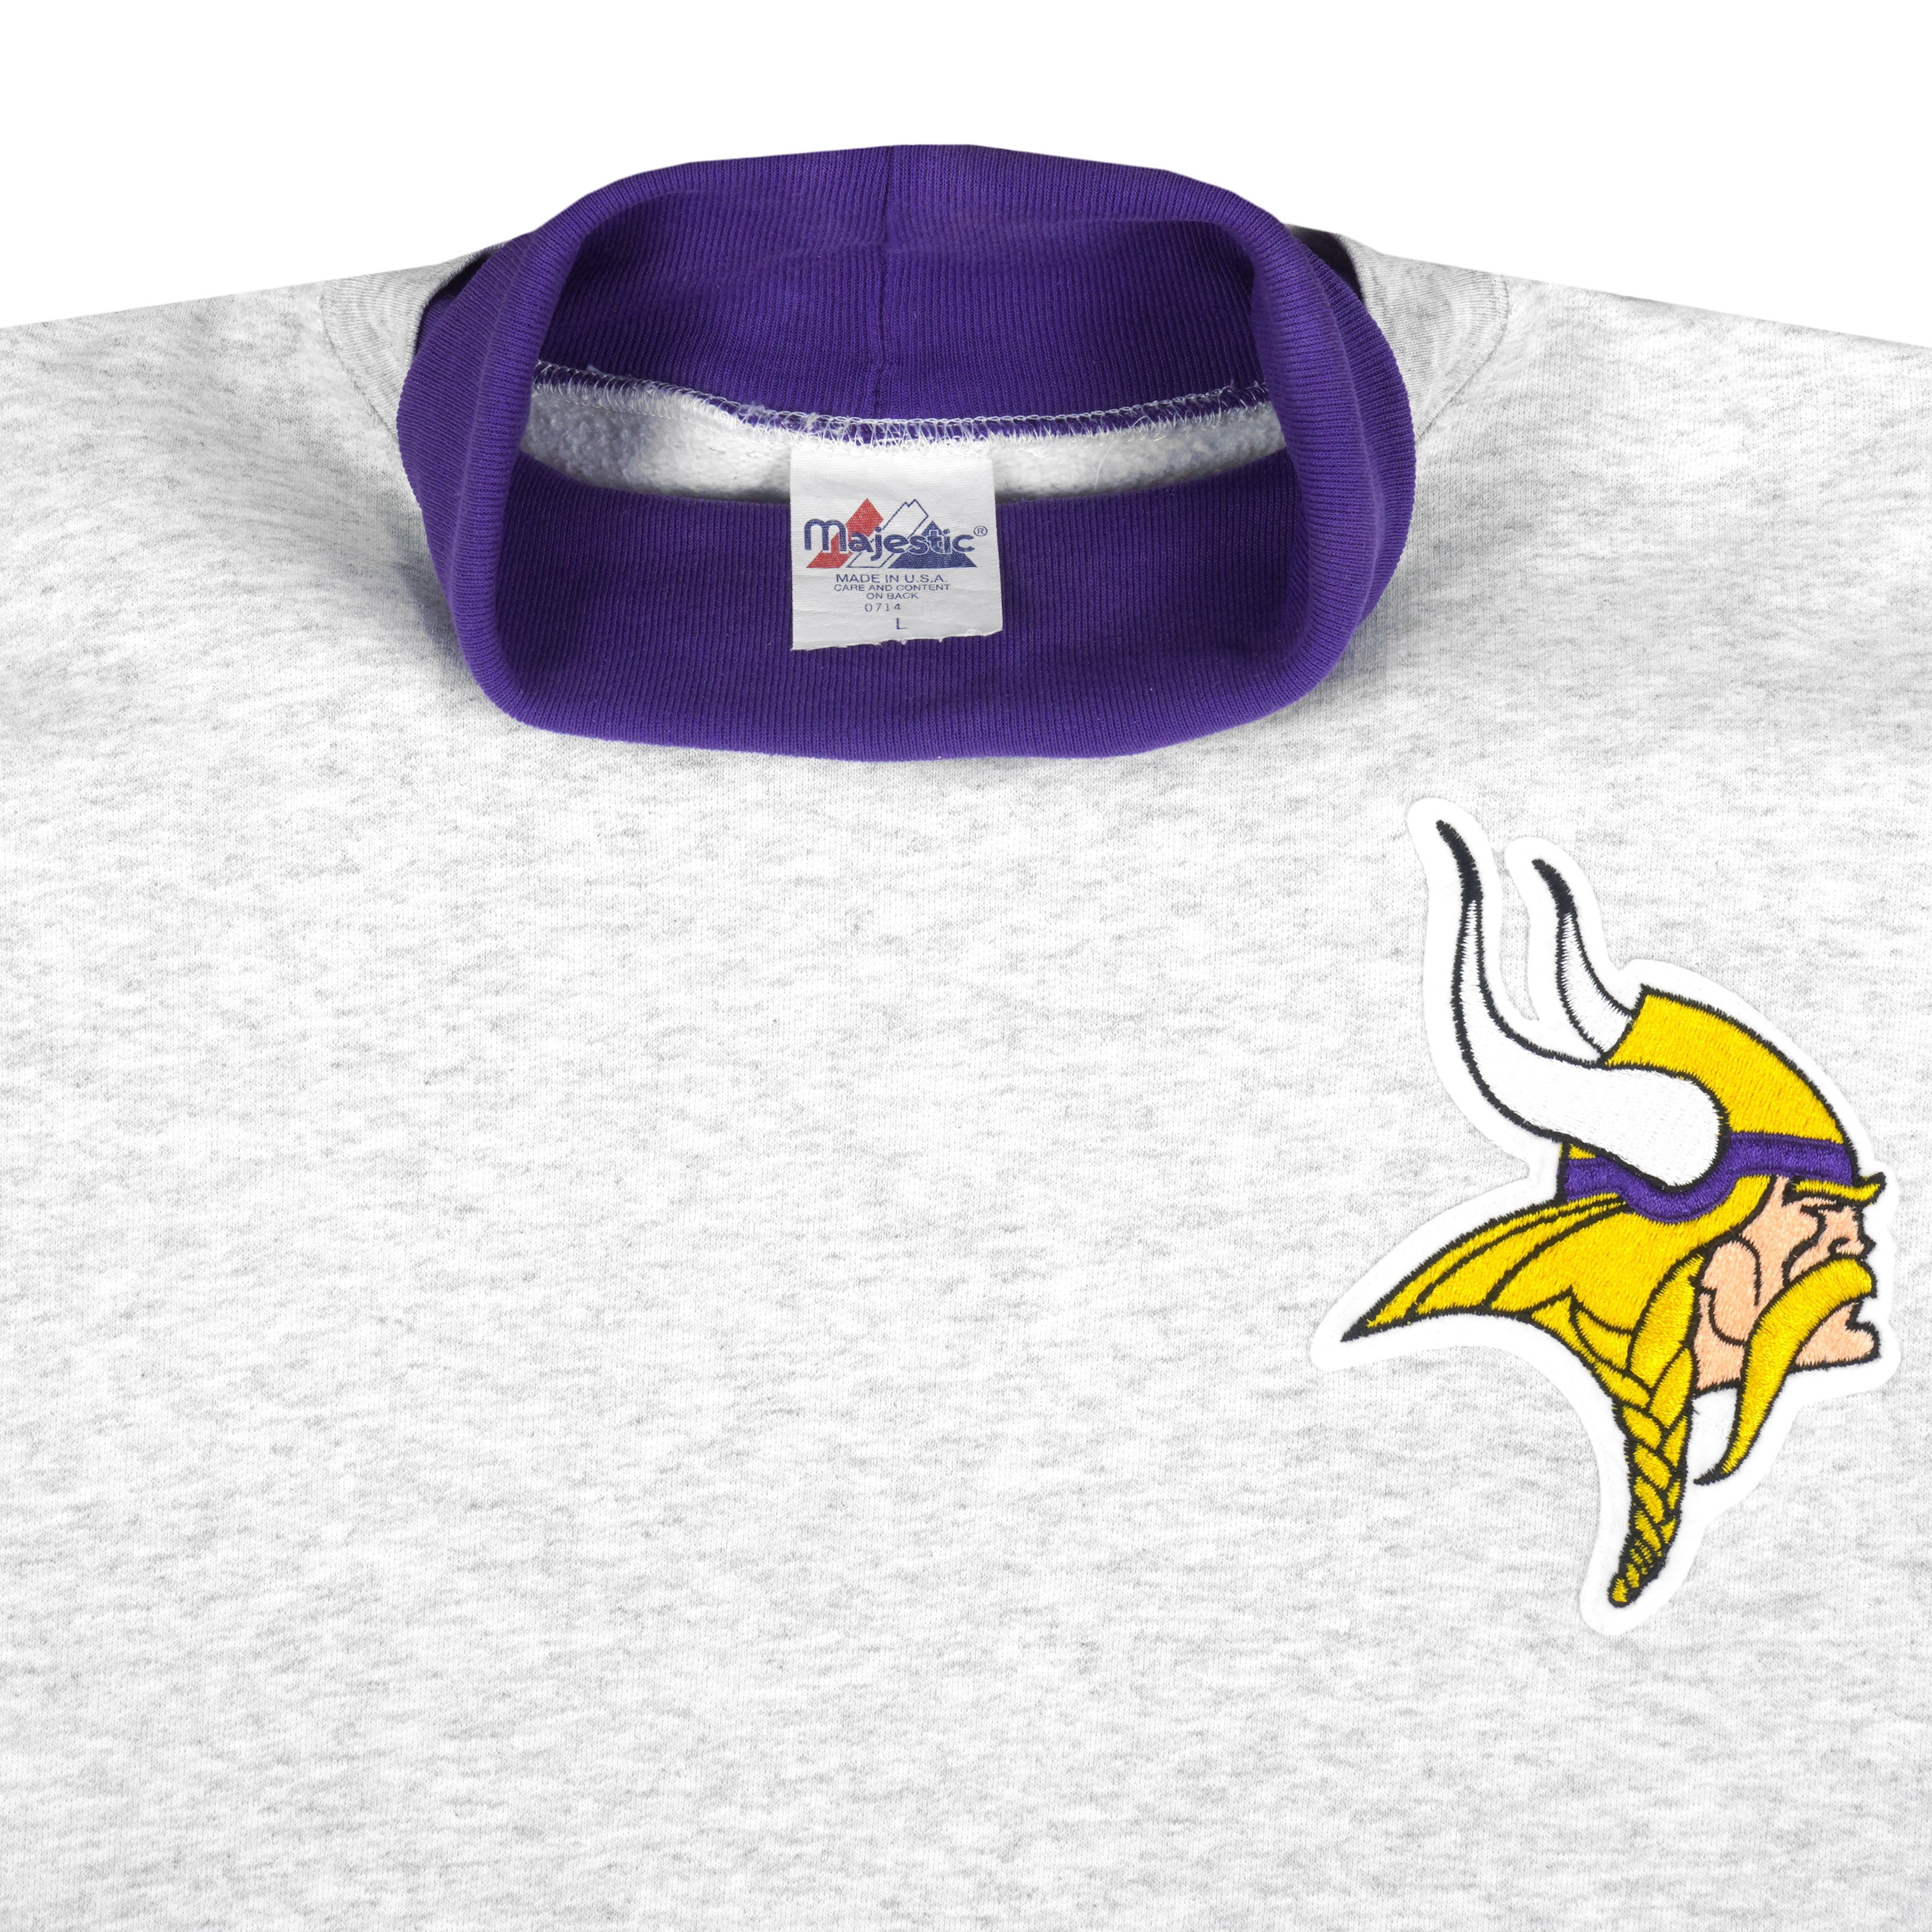 Vintage NFL Minnesota Vikings crewneck sweatshirt. Made in the USA